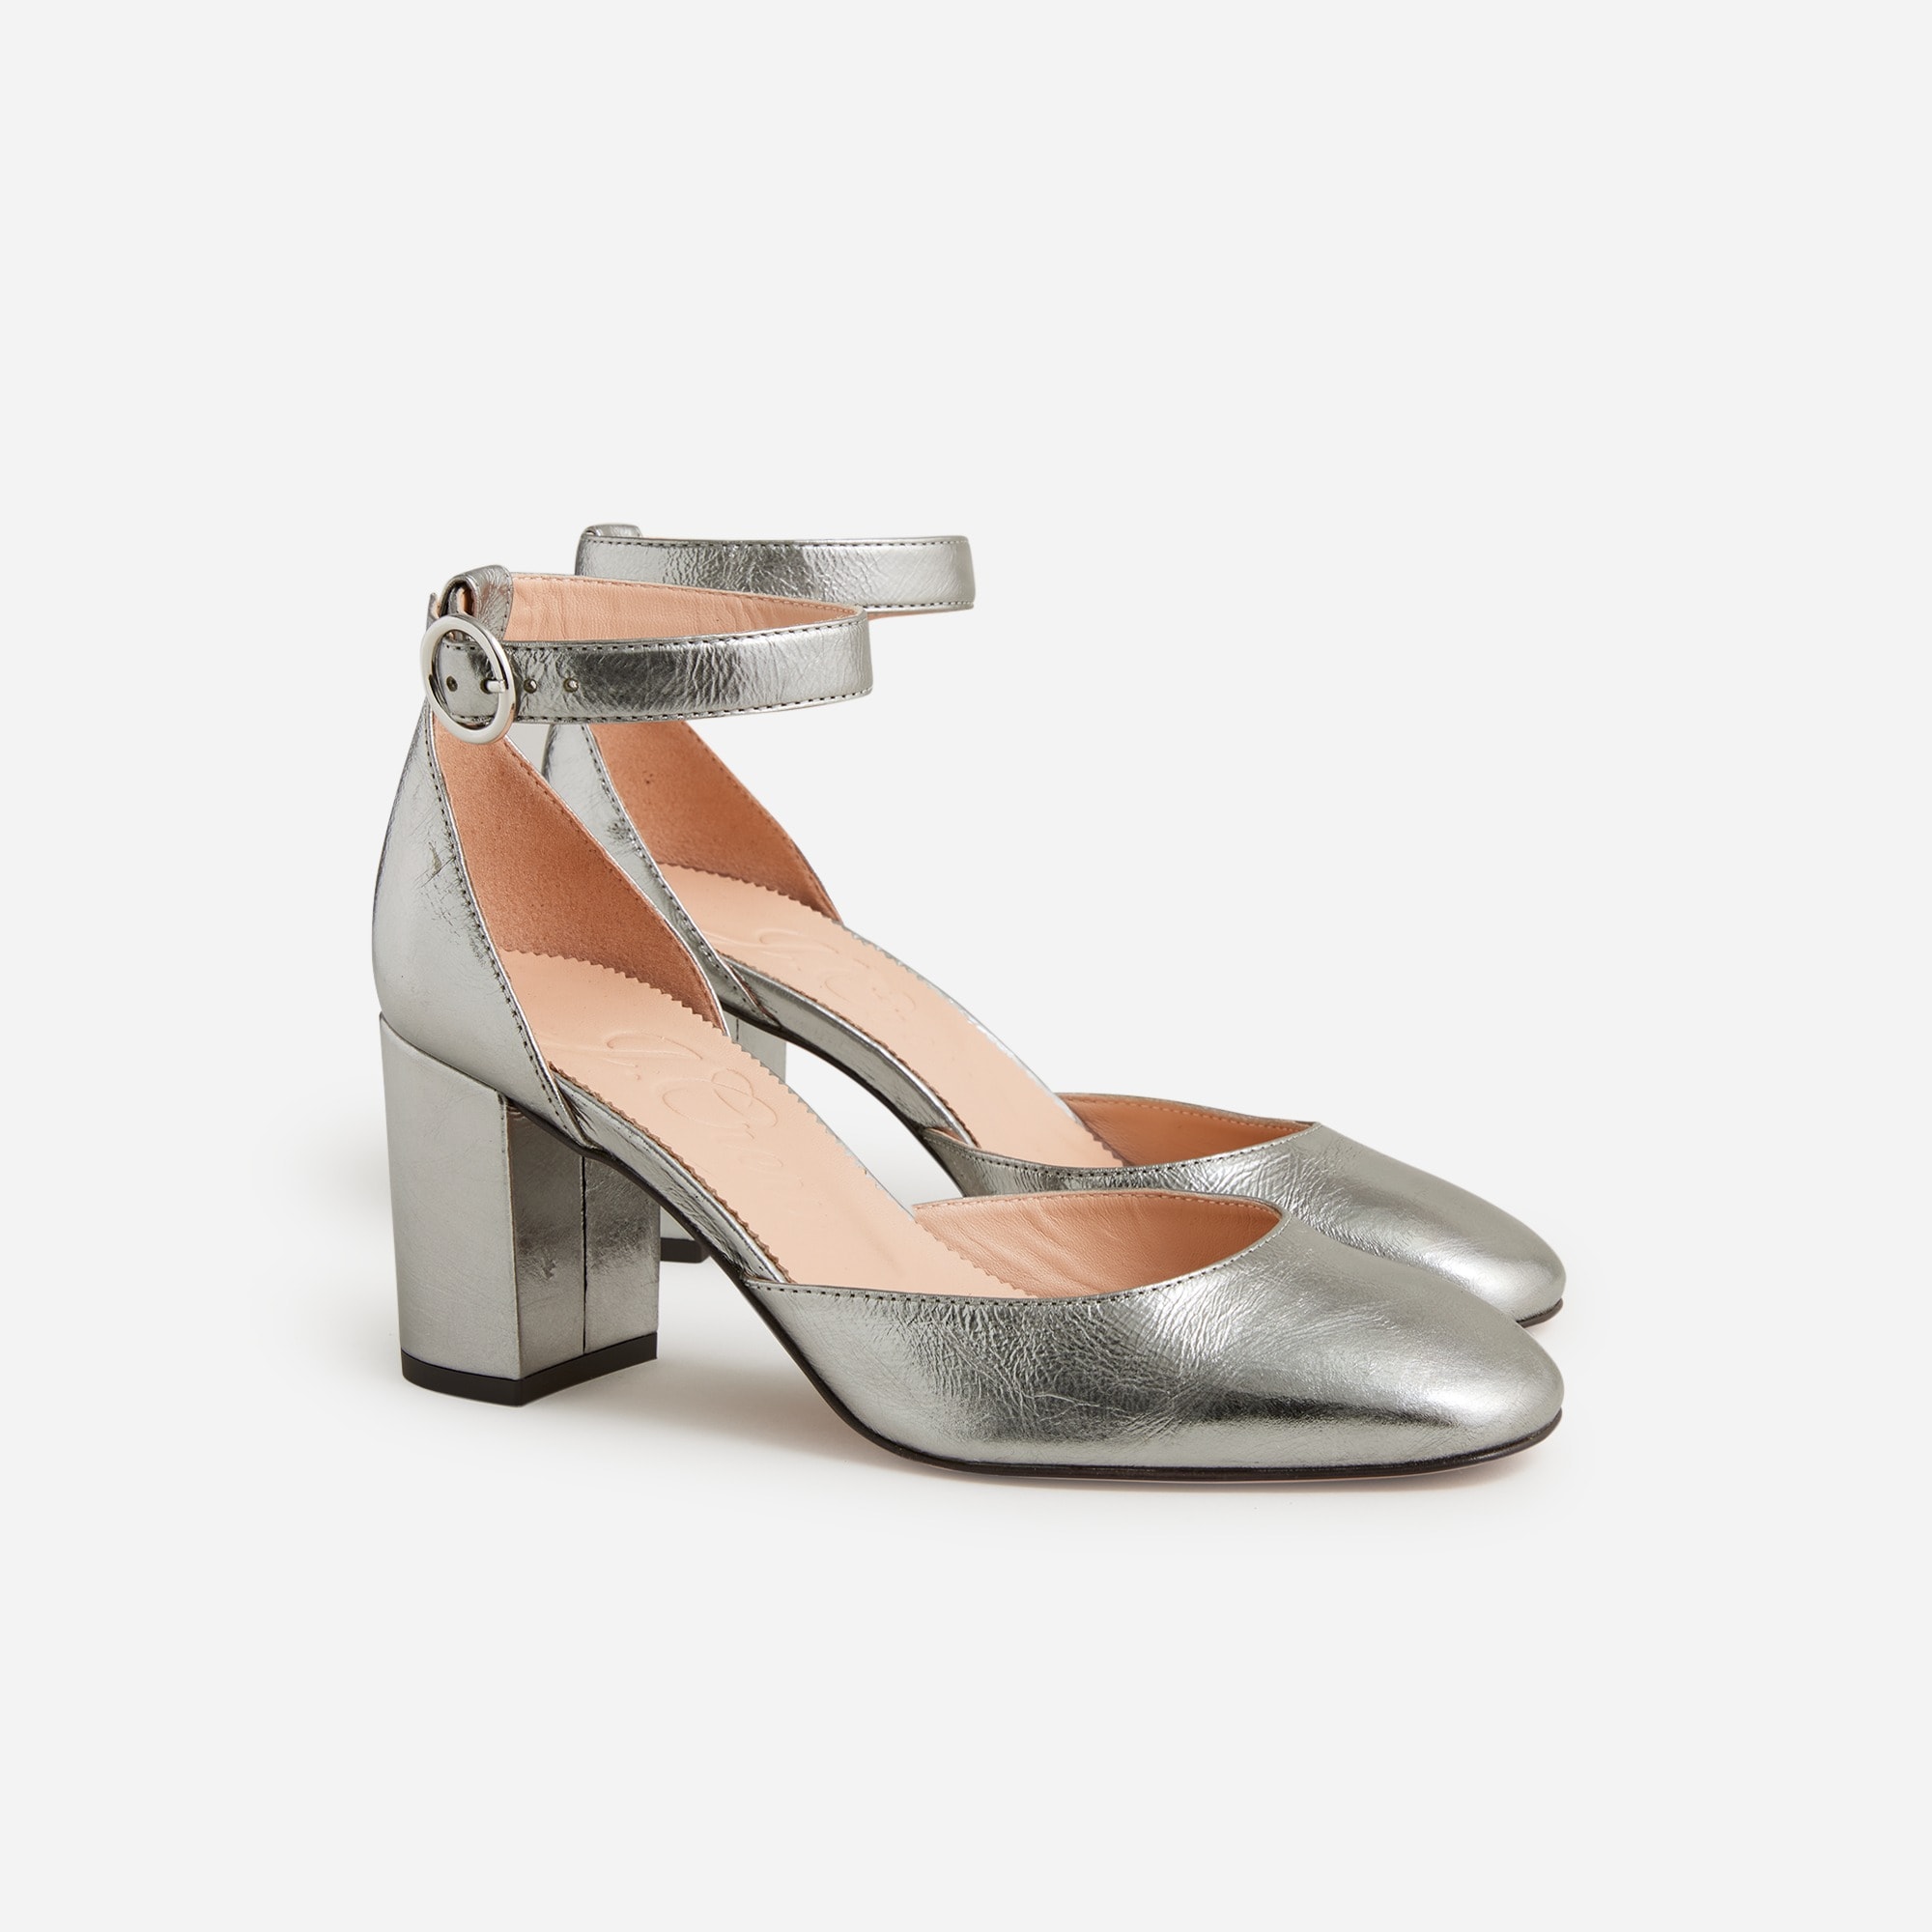  Maisie ankle-strap heels in crinkle metallic